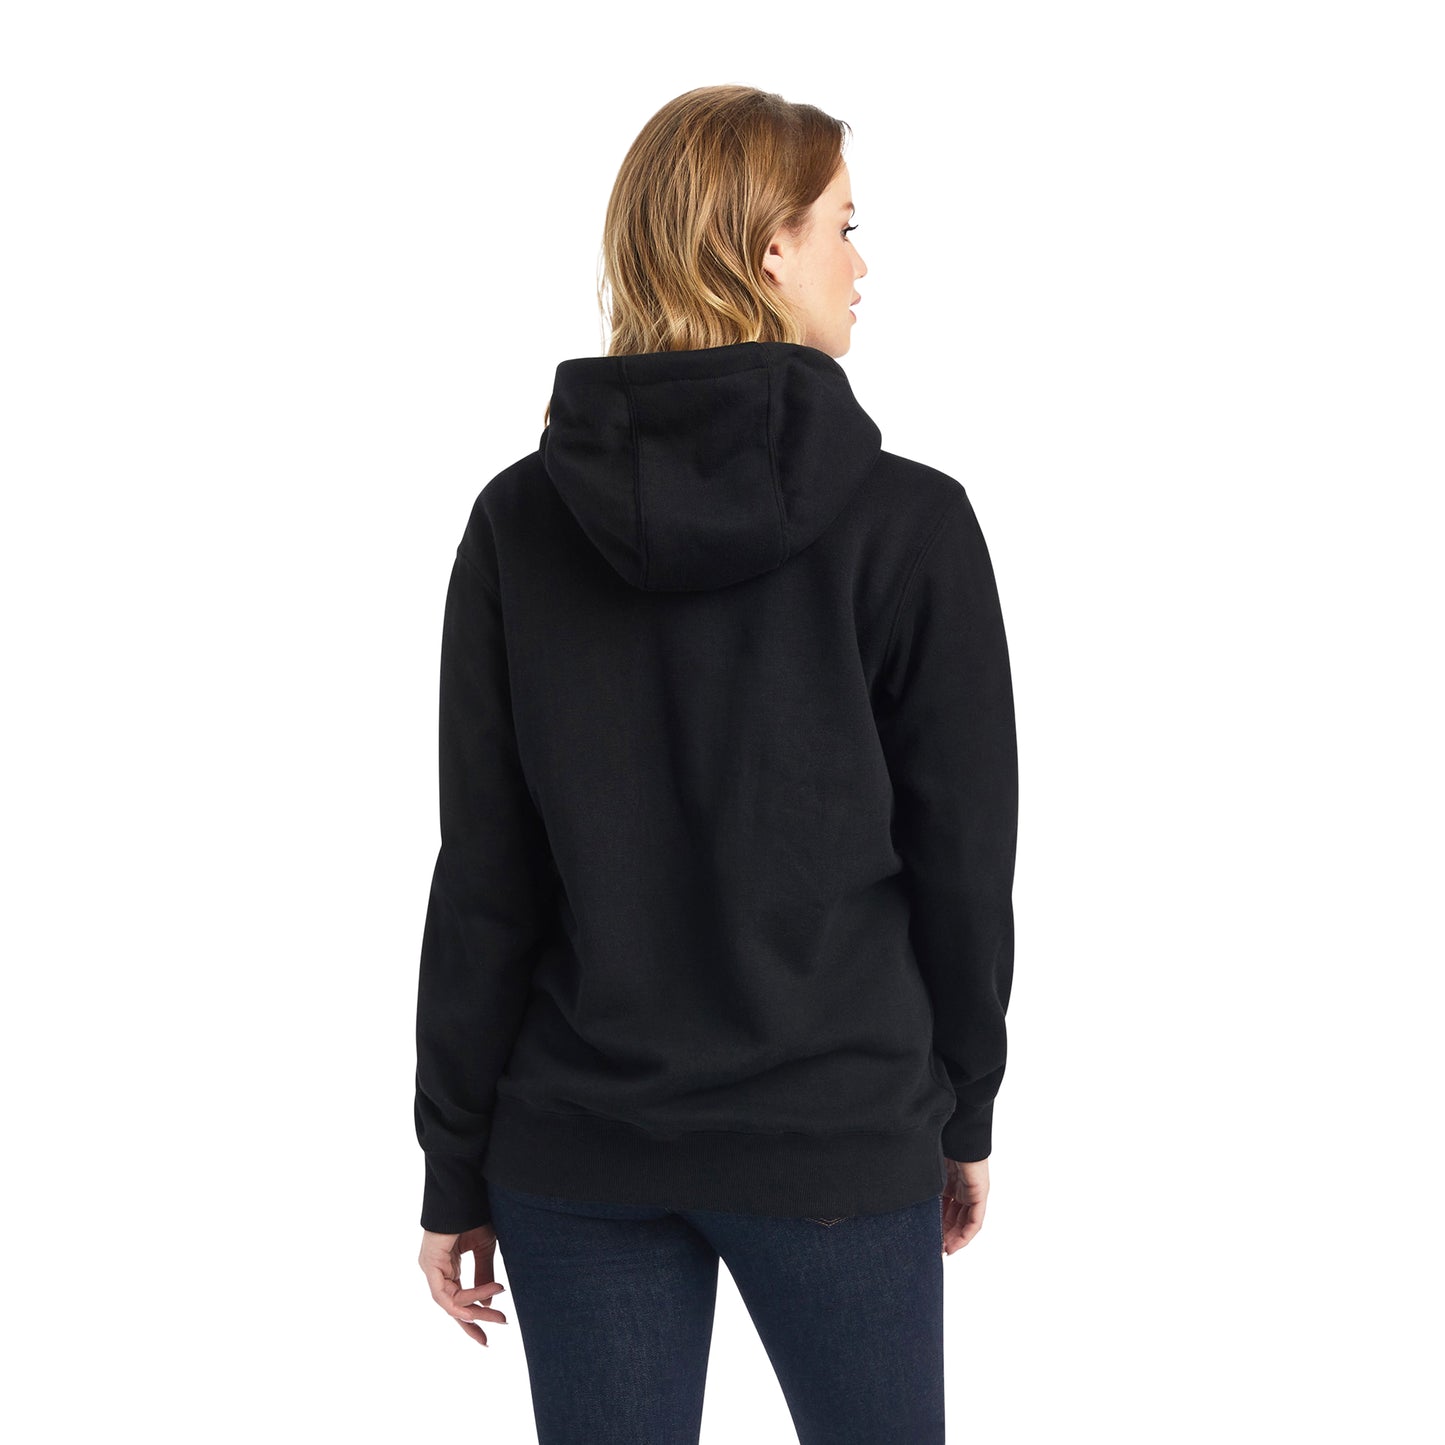 10042237 Ariat Women's REAL Sequin Logo hoodie Black